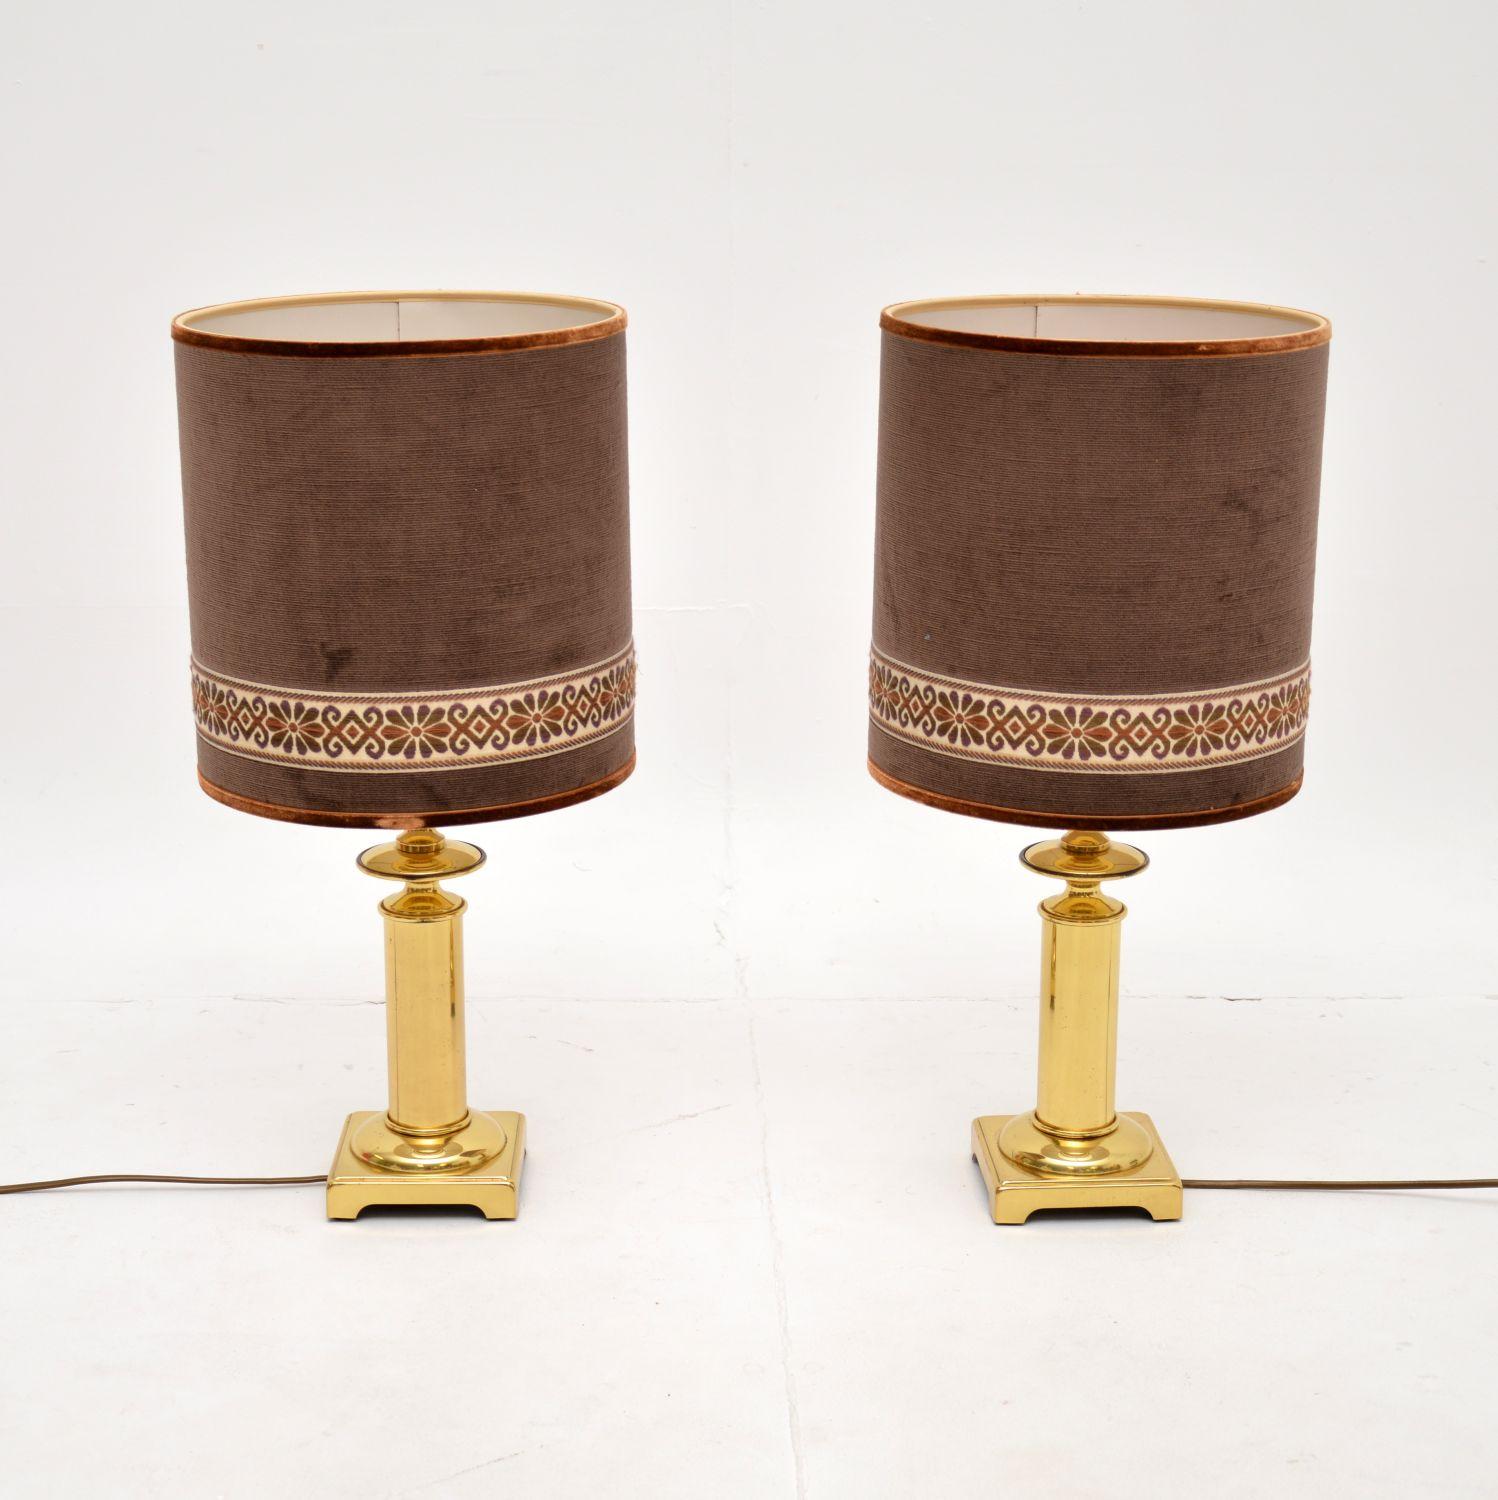 Ein stilvolles und sehr gut gemachtes Paar Vintage-Tischlampen aus Messing mit Samtschirmen. Sie wurden in Frankreich hergestellt und stammen etwa aus den 1970er Jahren.

Die Qualität ist hervorragend, die massiven Messingfüße sind extrem stabil und